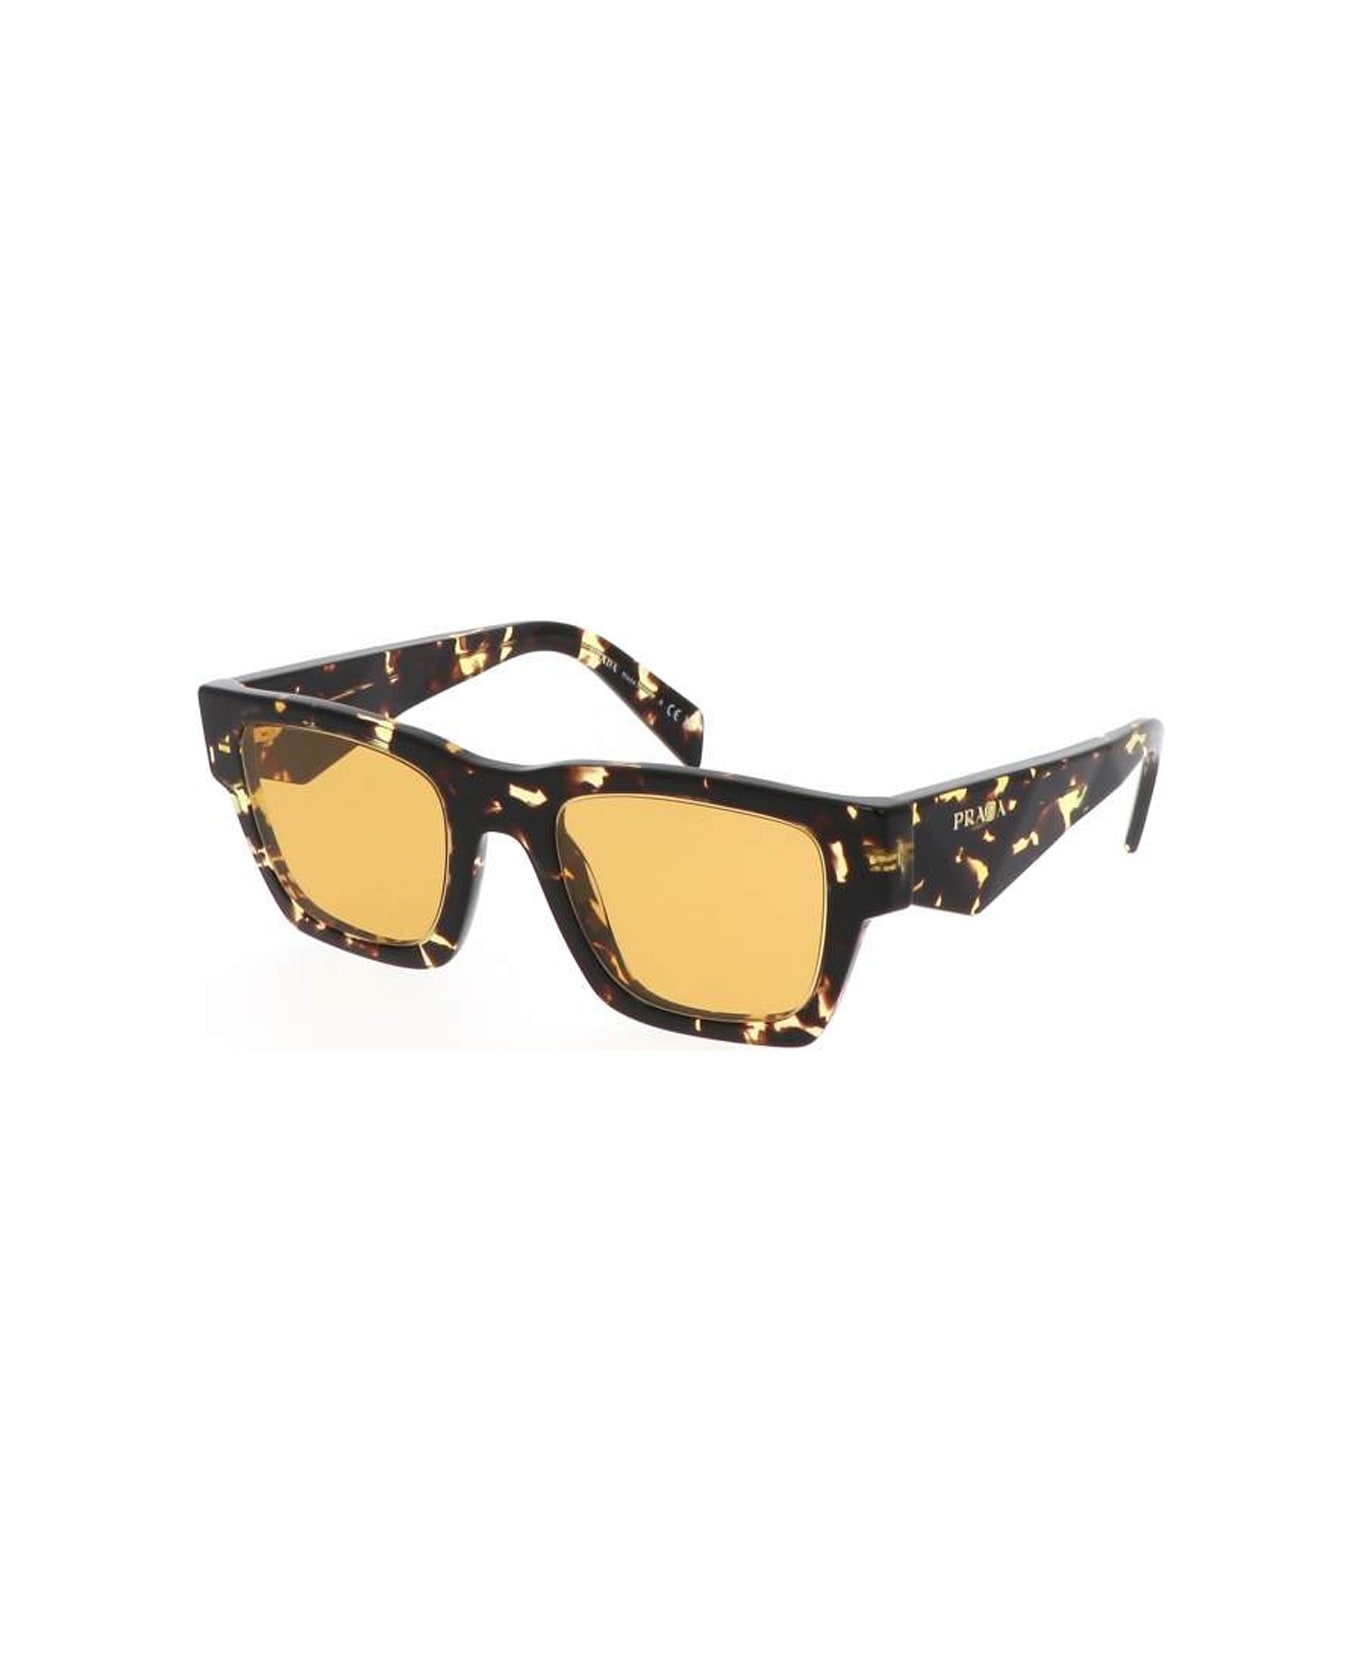 Prada Eyewear Pra06s 16o10c Sunglasses Polarized - Giallo